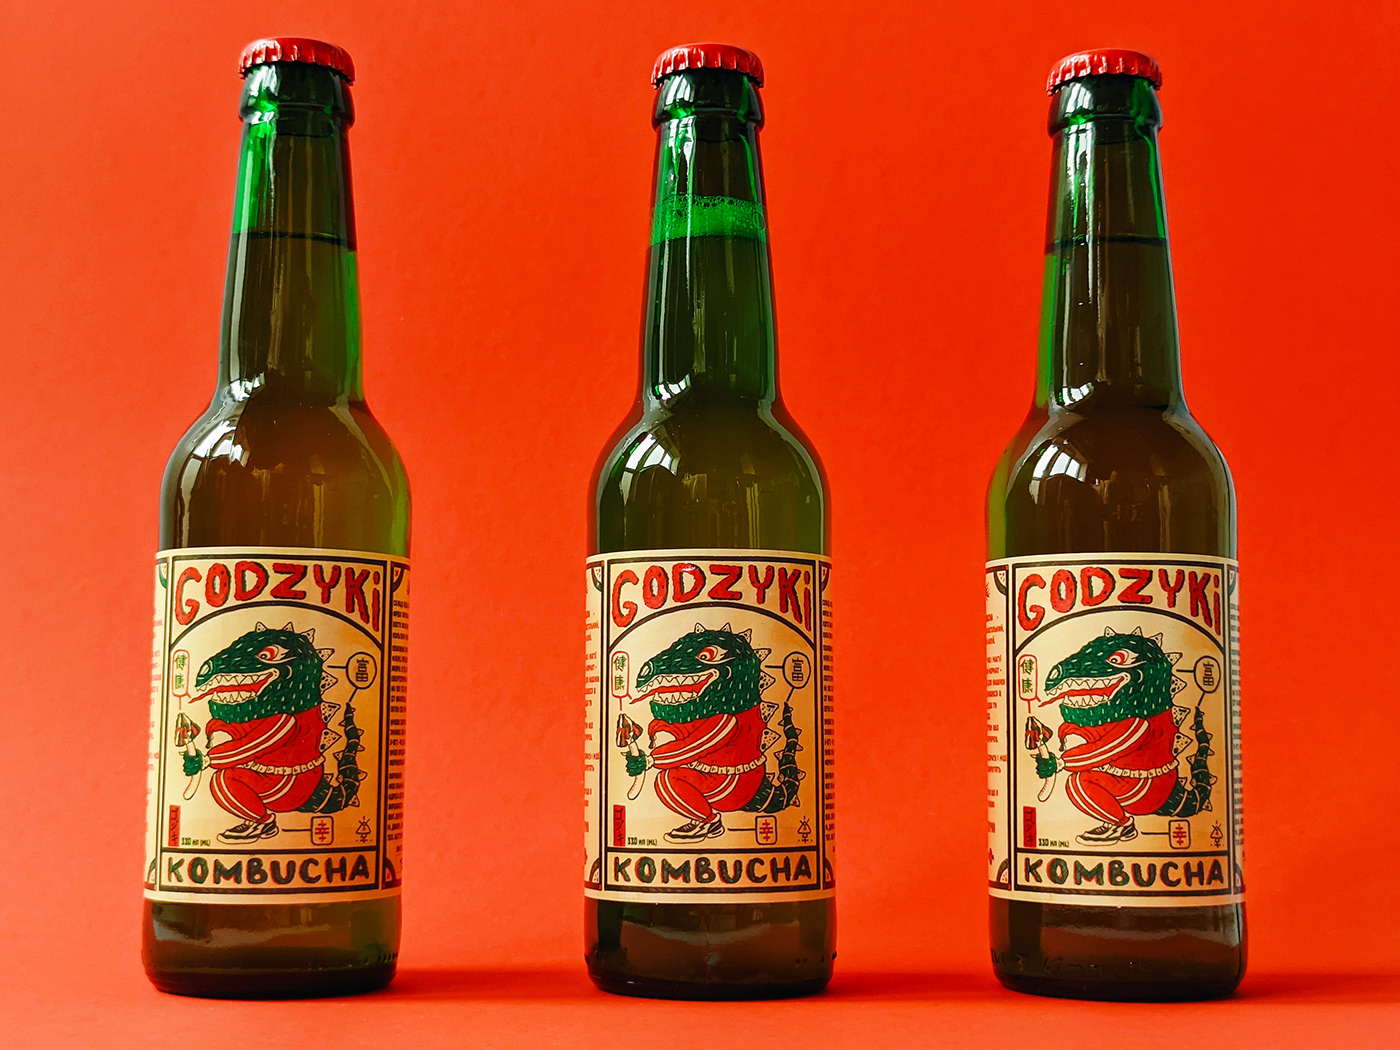 bottle brand identity godzilla Godzyki kaiju kombucha package design  Packaging